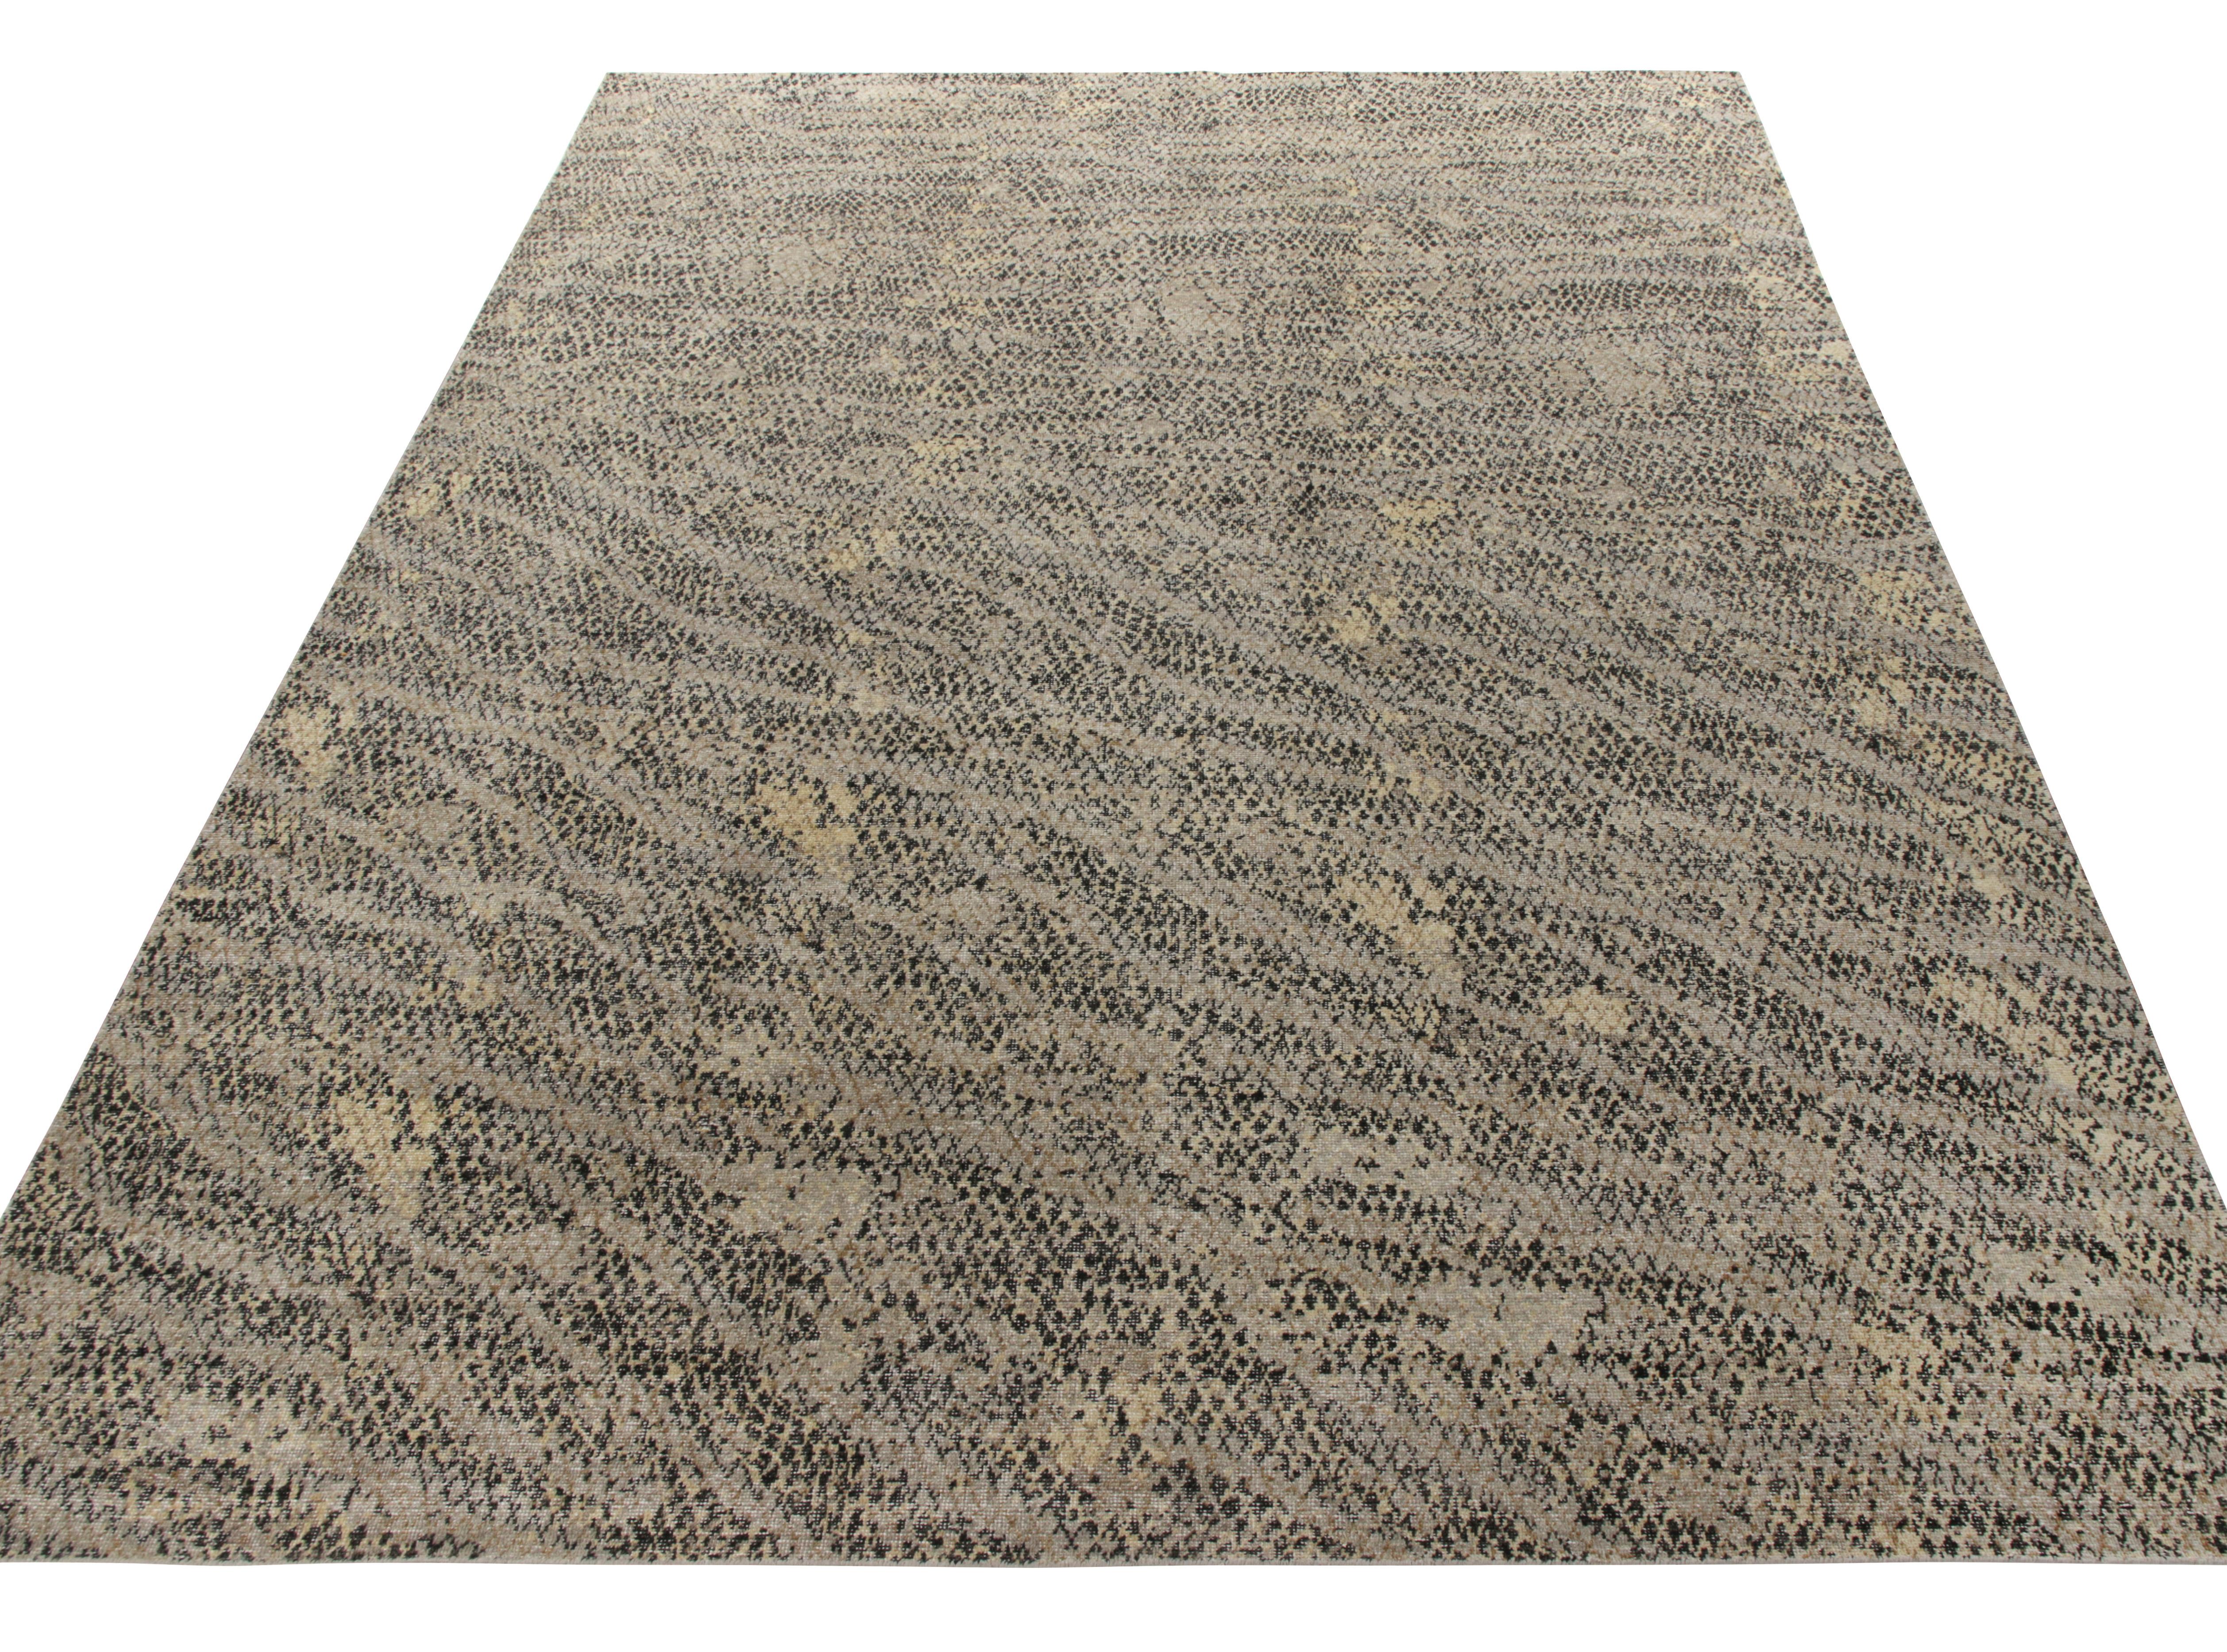 Un tapis noué à la main de 10x14 dans un style désuet de la collection Homage de Rug & Kilim. Ce cadre moderne porte les traits caractéristiques de notre ligne Dots où un motif pointillé méticuleux s'épanouit sur le tissage dans un délicieux motif